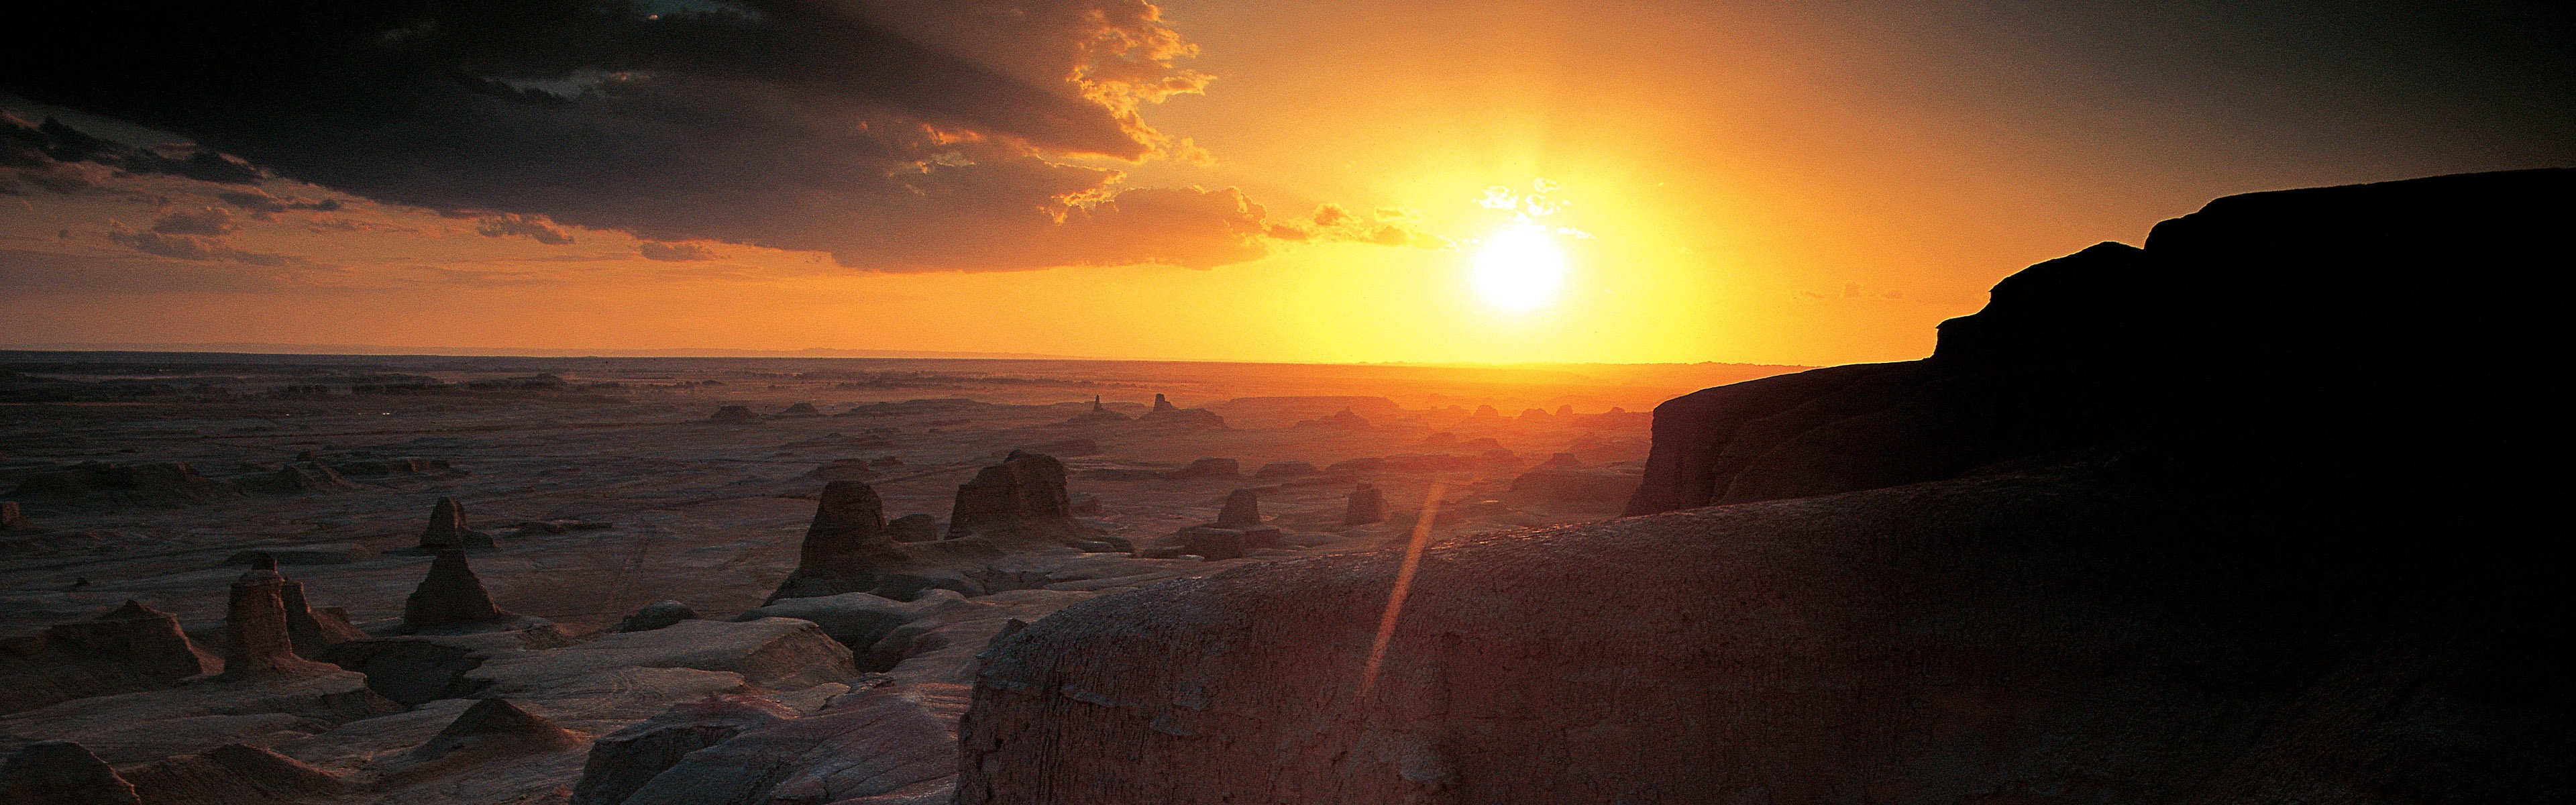 暑くて乾燥した砂漠、Windows 8のパノラマワイドスクリーンの壁紙 #12 - 3840x1200